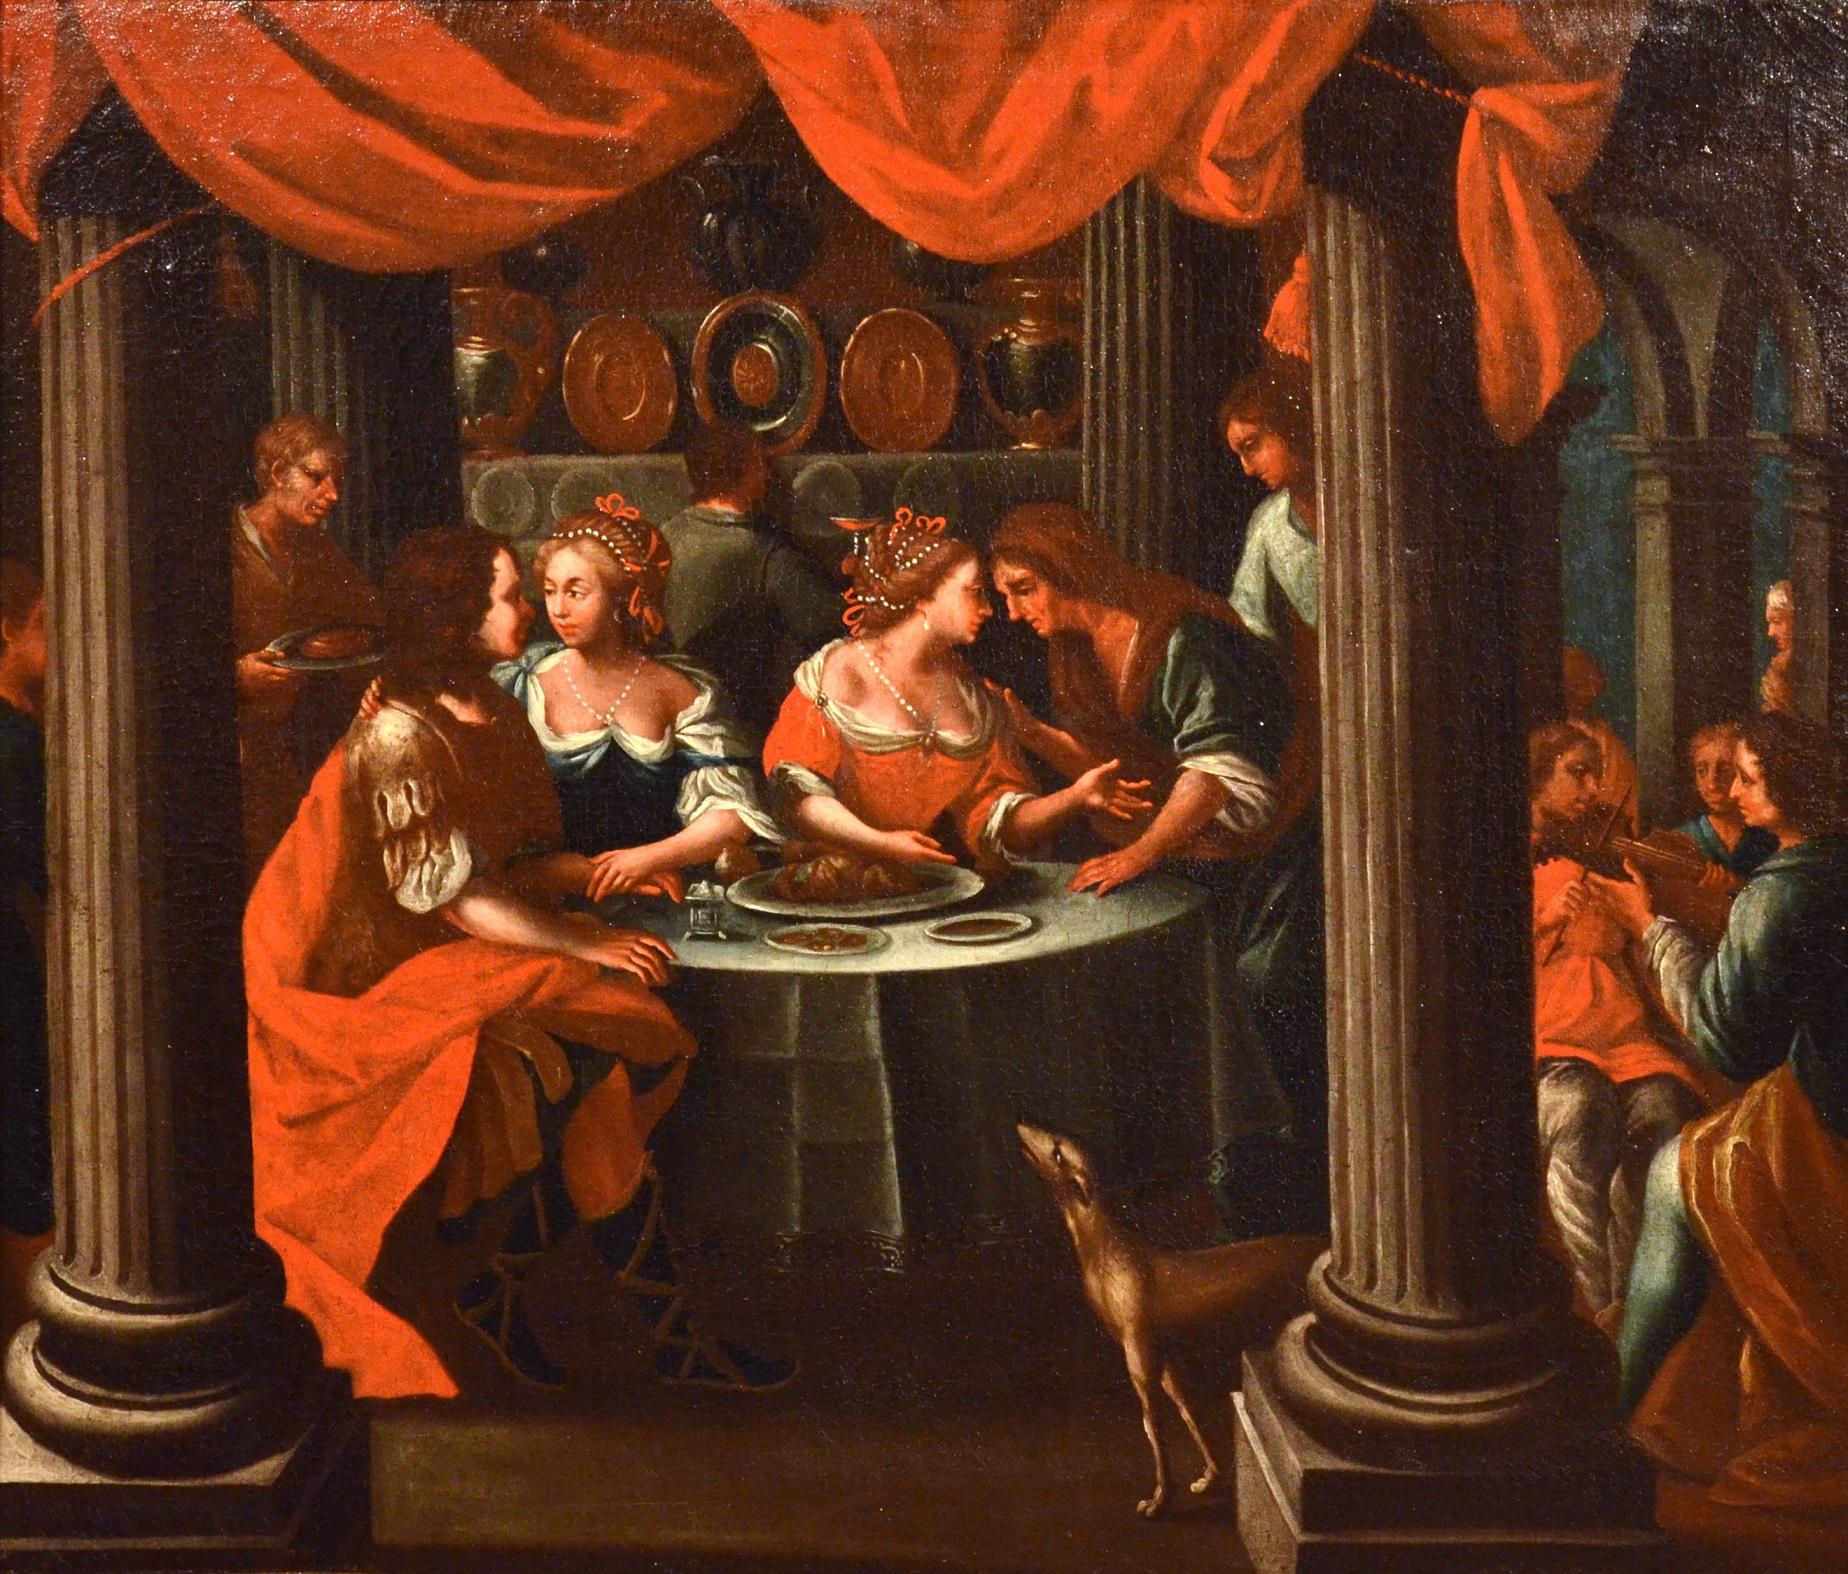 Bankett Flemish Italienische Malerei Öl auf Leinwand Altmeister 17. Jahrhundert Veronese Kunst (Alte Meister), Painting, von Unknown